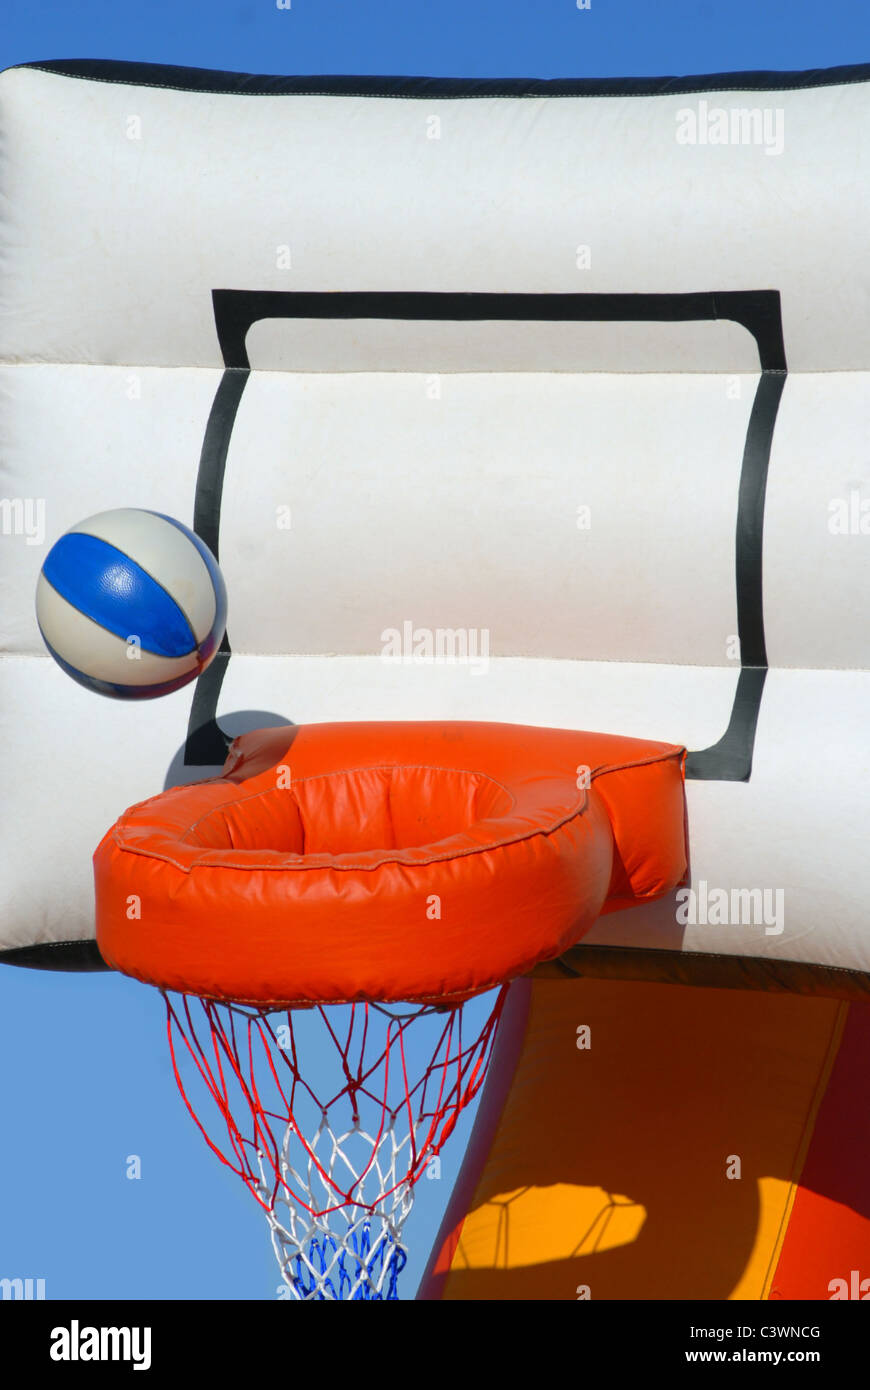 Ball in den Korb zu bekommen. Teilansicht eines bunten aufblasbaren Basketball-Spielzeugs auf blauen Himmelshintergrund Stockfoto